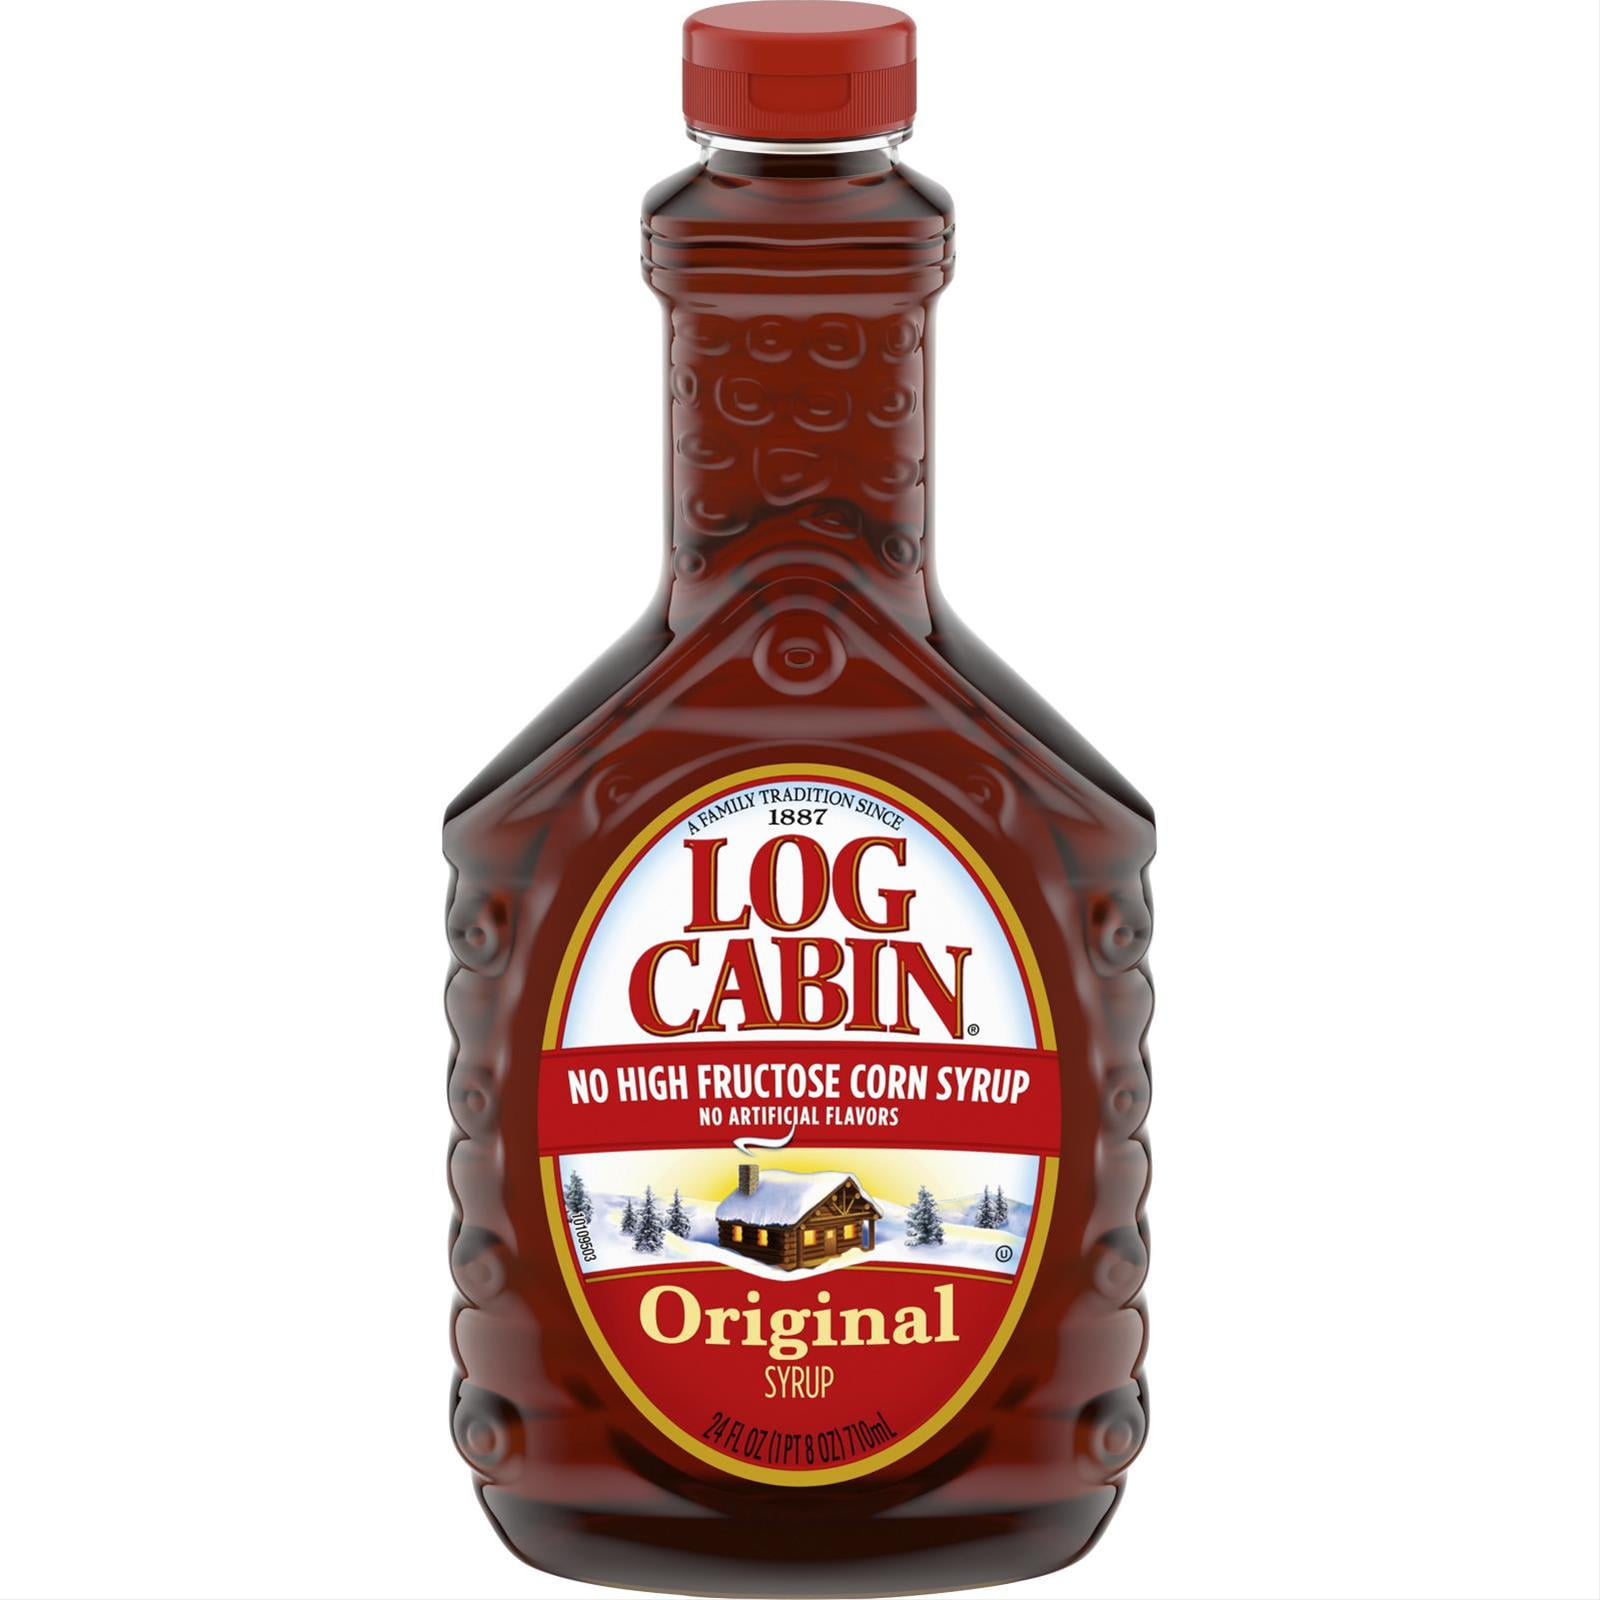 Log cabin syrup bottle 1776